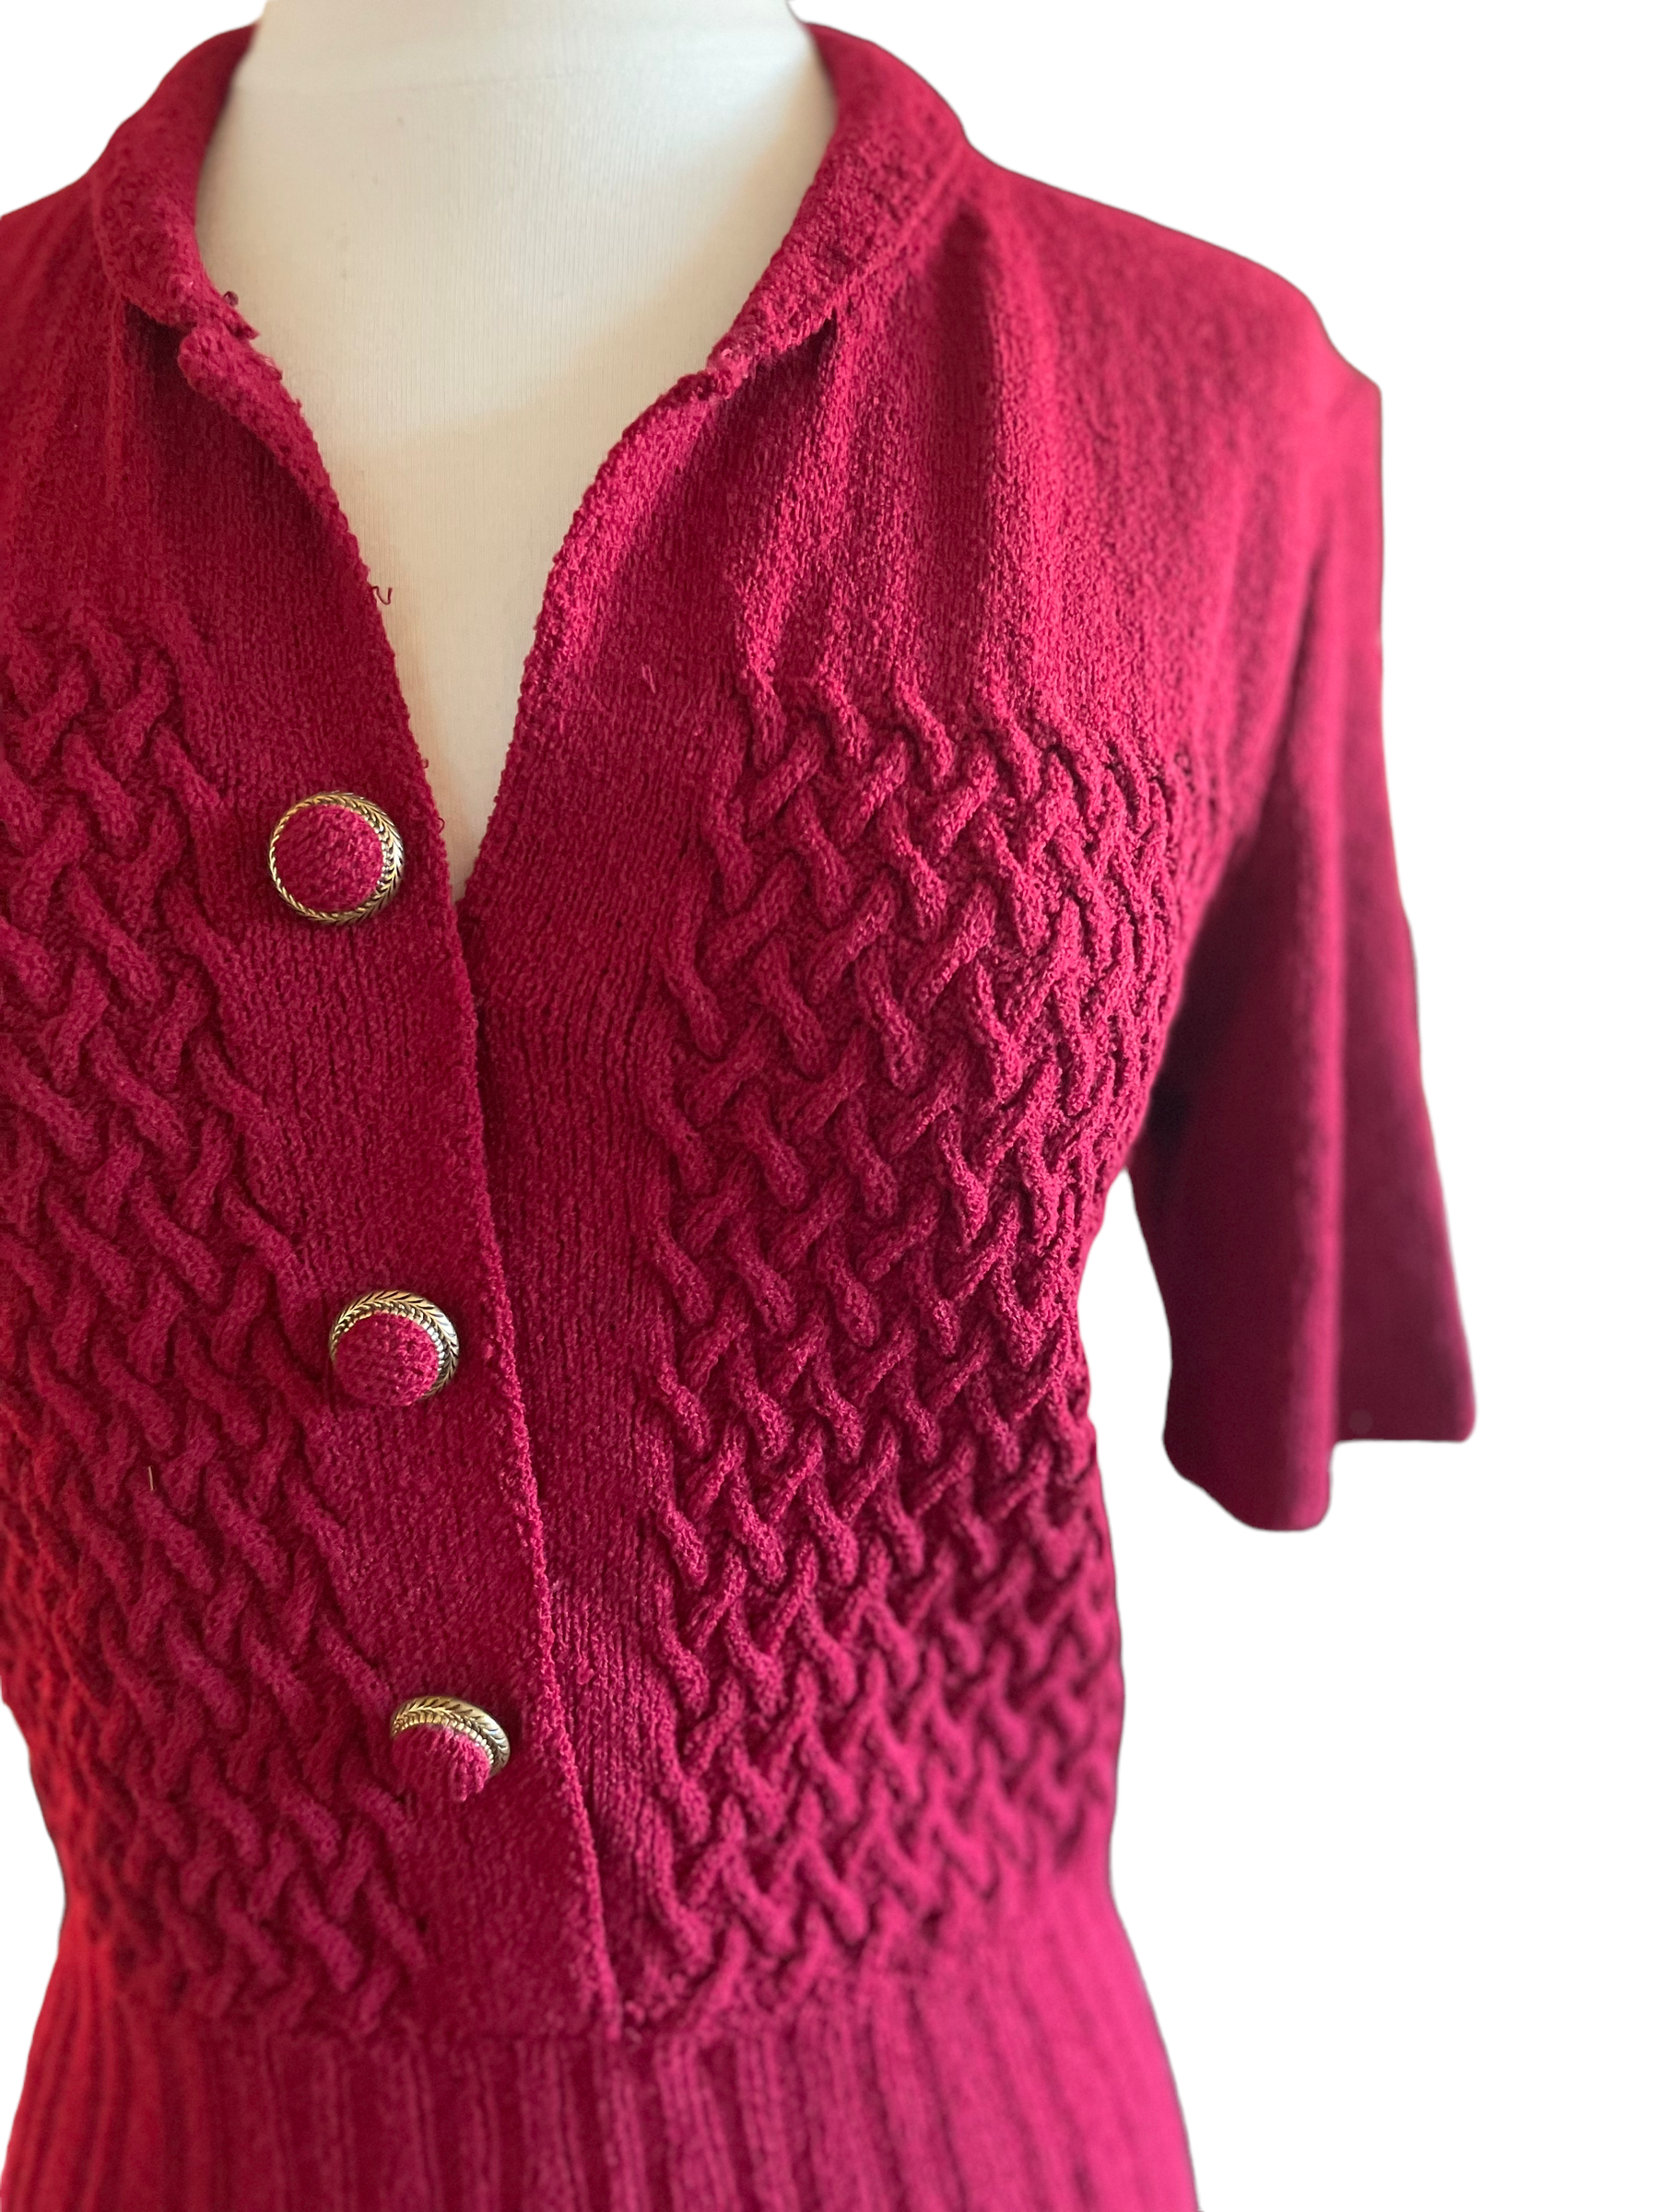 Vintage 1940s Hand-Knit Red Dress SZ S |  Barn Owl Vintage | Seattle Vintage Dresses Left shoulder view.